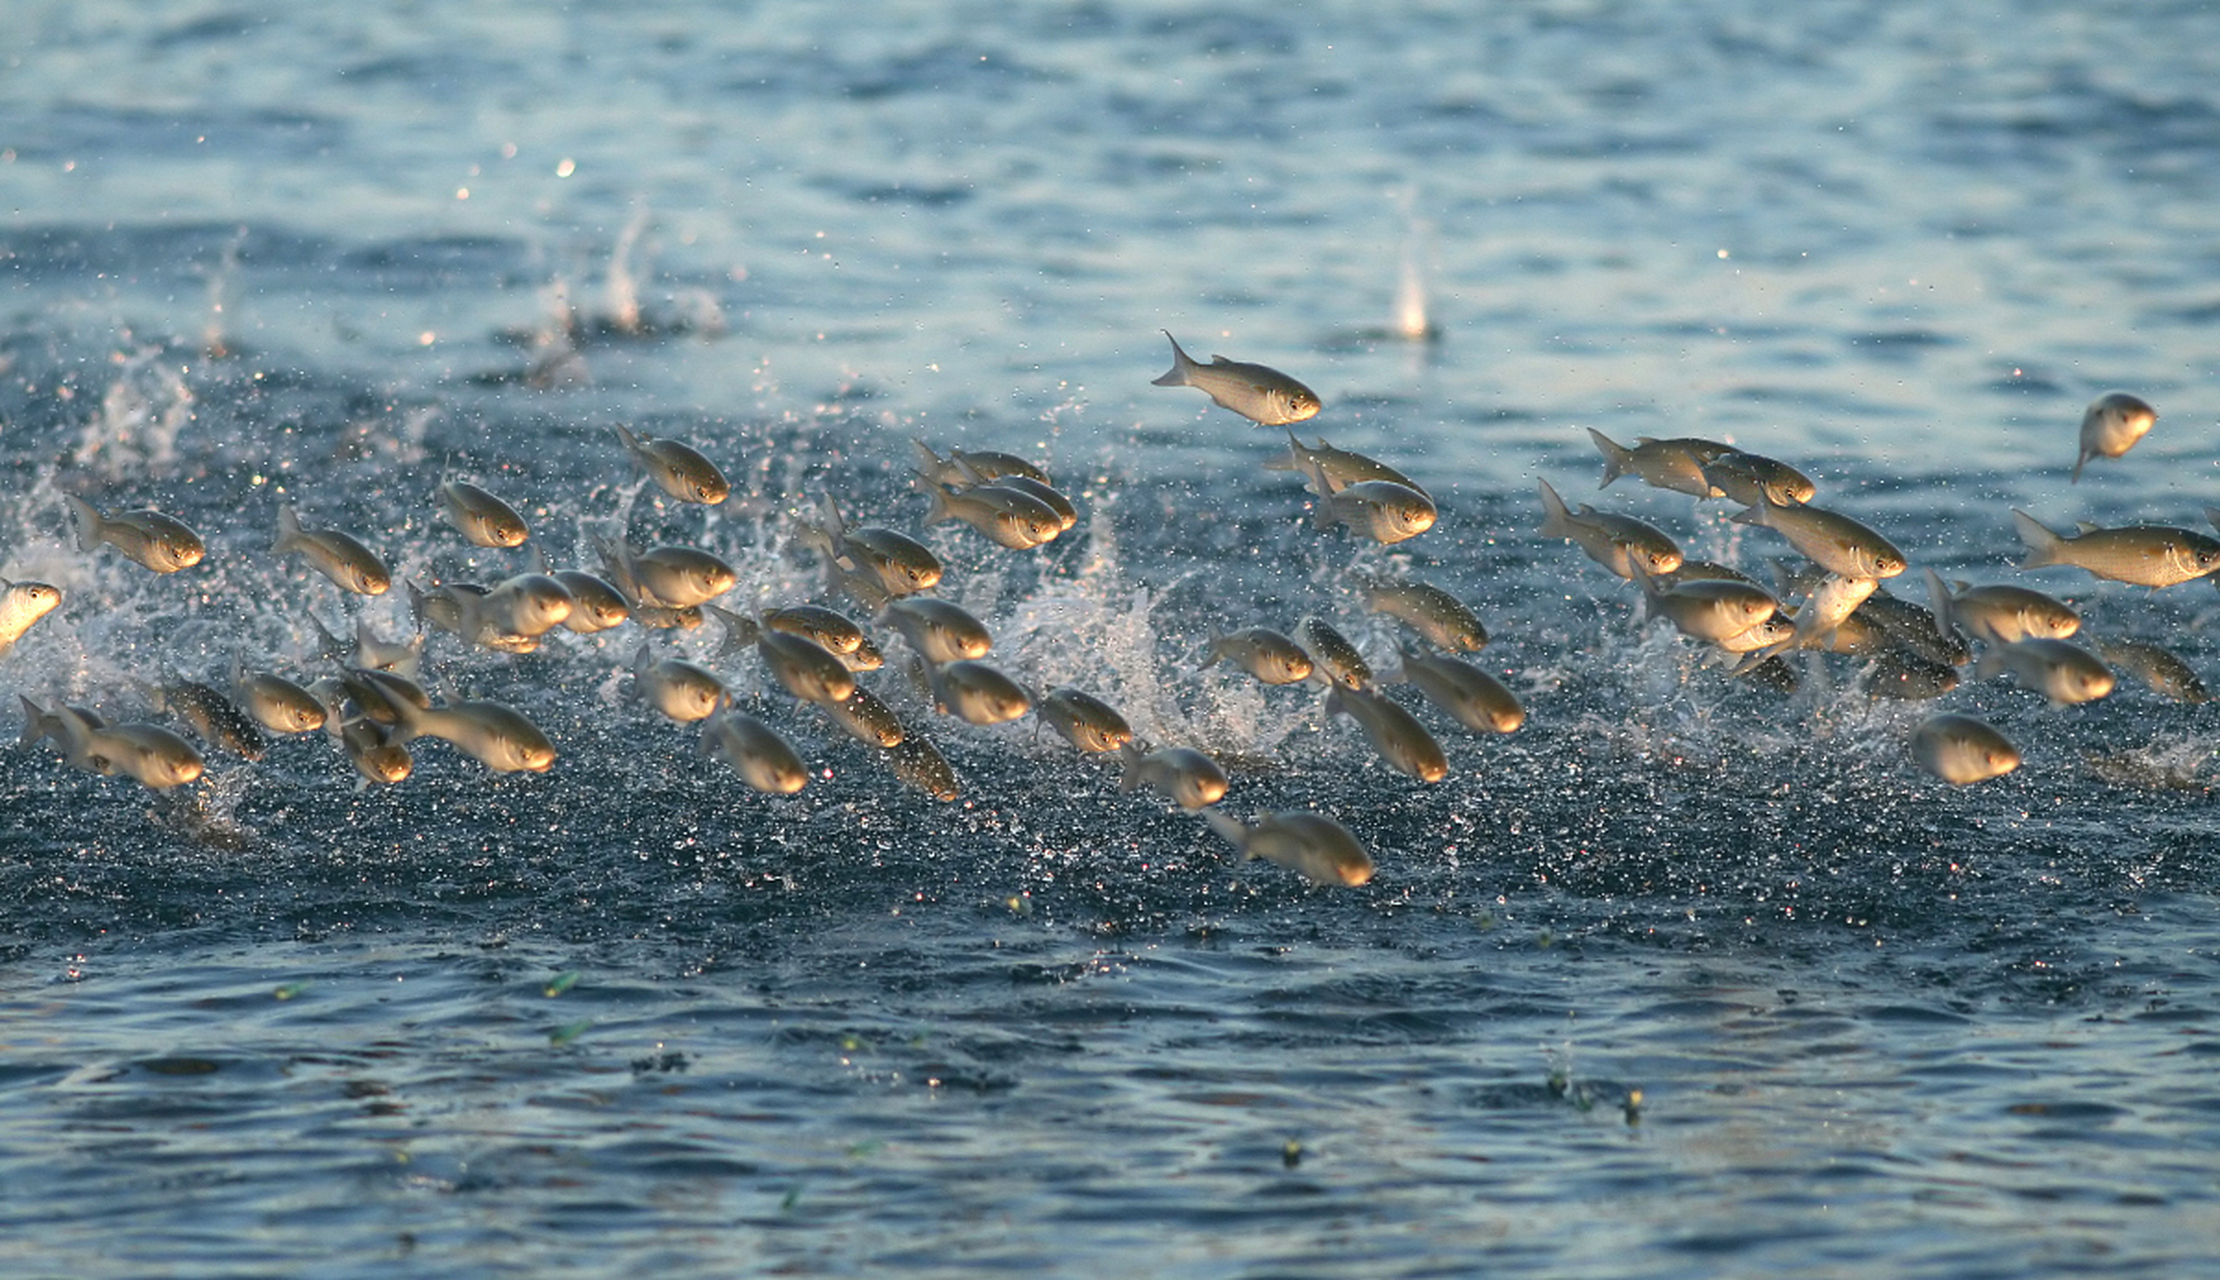 想象一下,阳光照耀在湖面上,一群鱼儿欢快地跳跃着,仿佛在为大自然